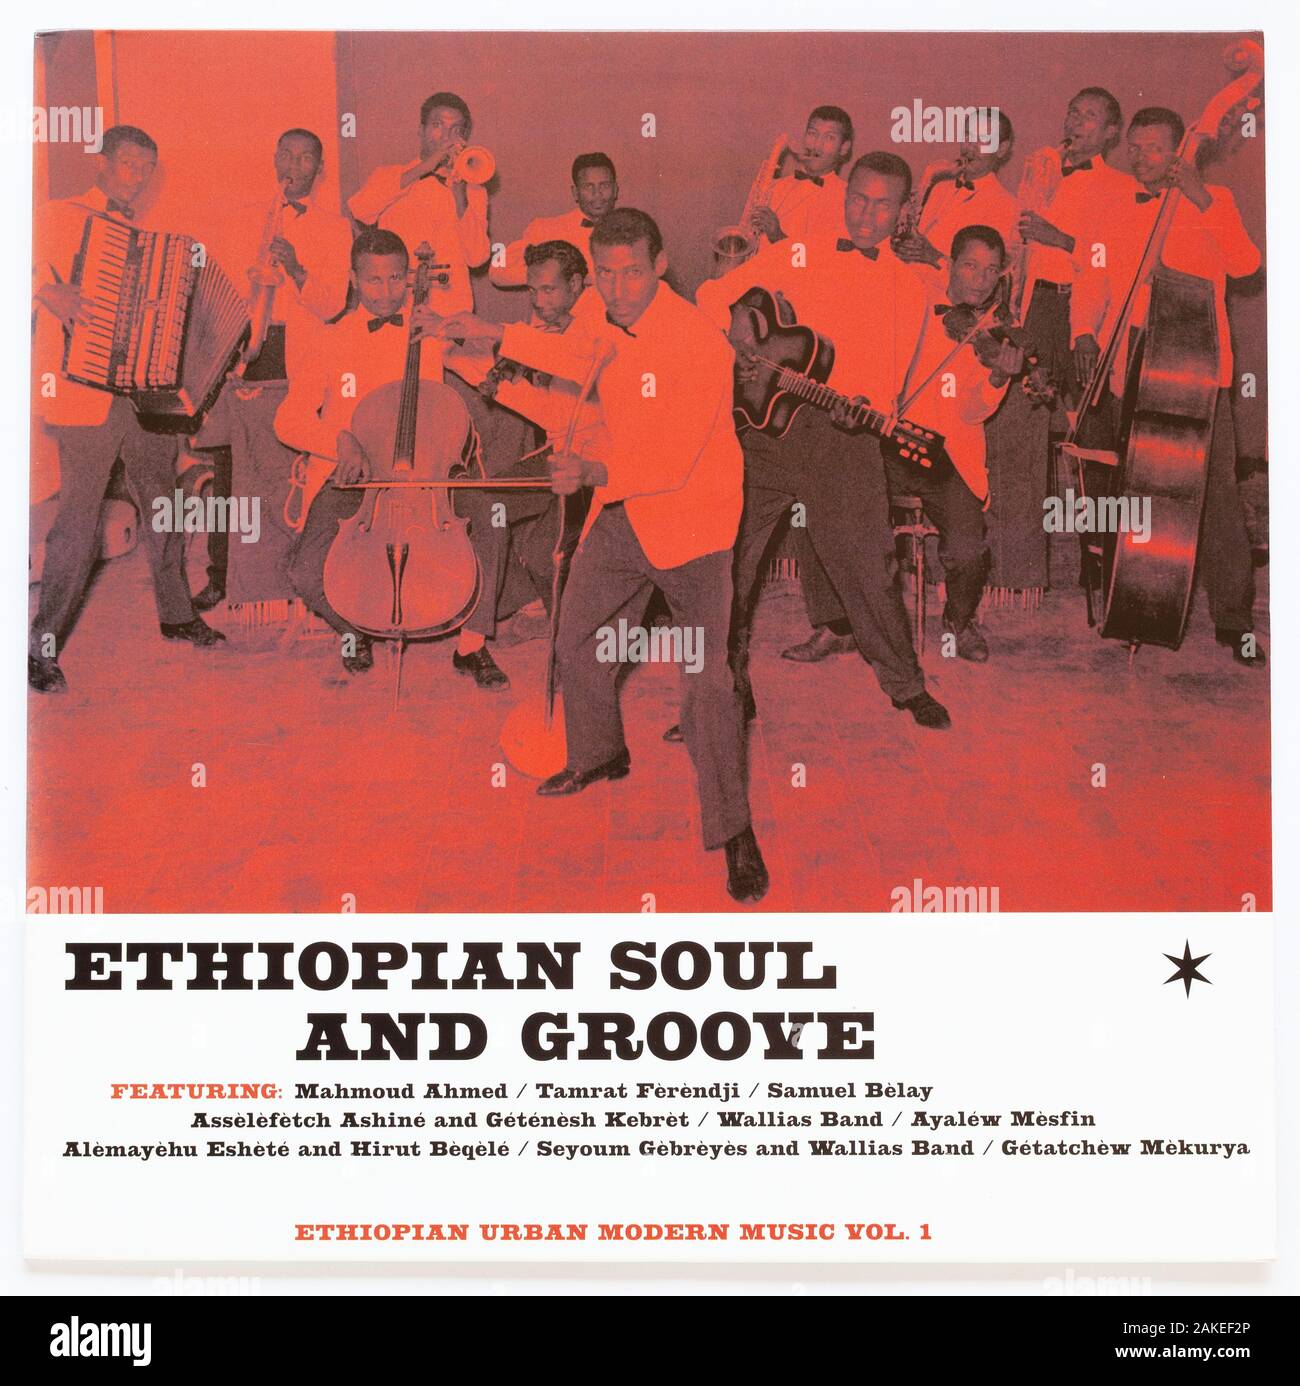 La portada de Ethiopian Soul and Groove, una compilación de la música urbana moderna etíope - sólo uso editorial Foto de stock